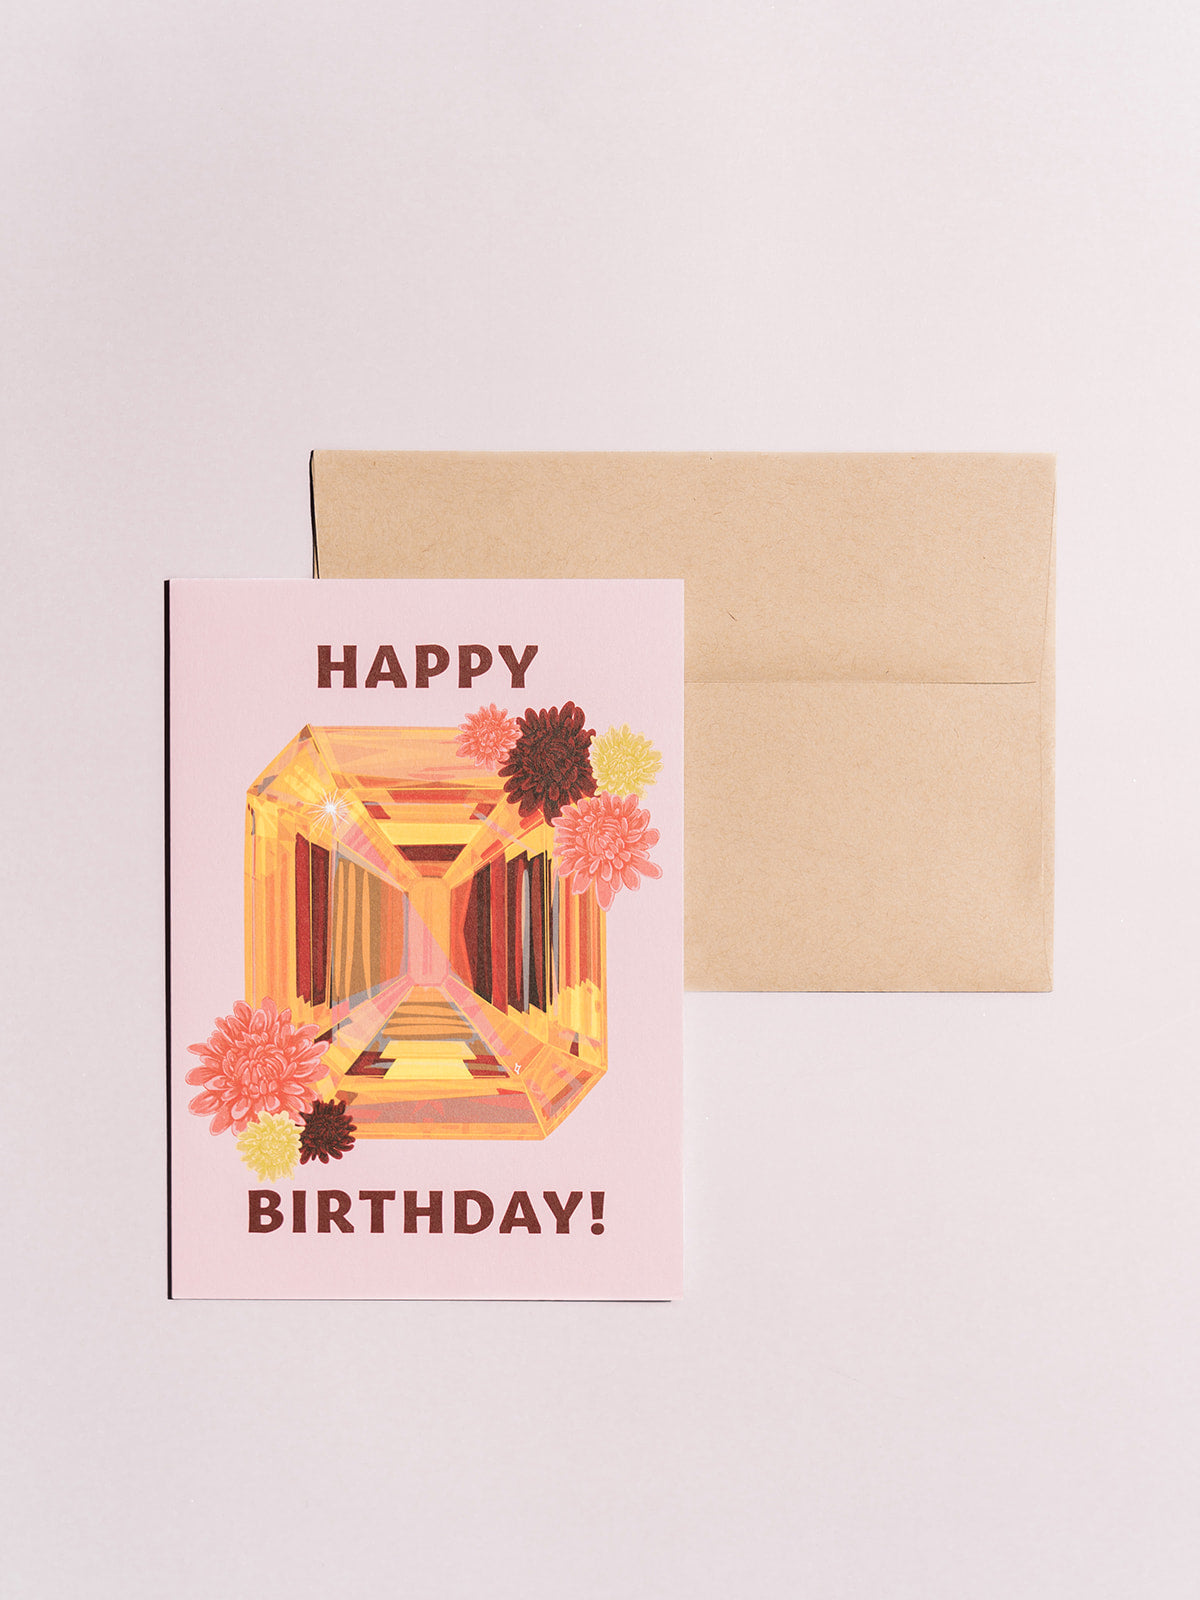 november topaz chyrsanthemum birthstone gem stone birthday card with kraft envelope